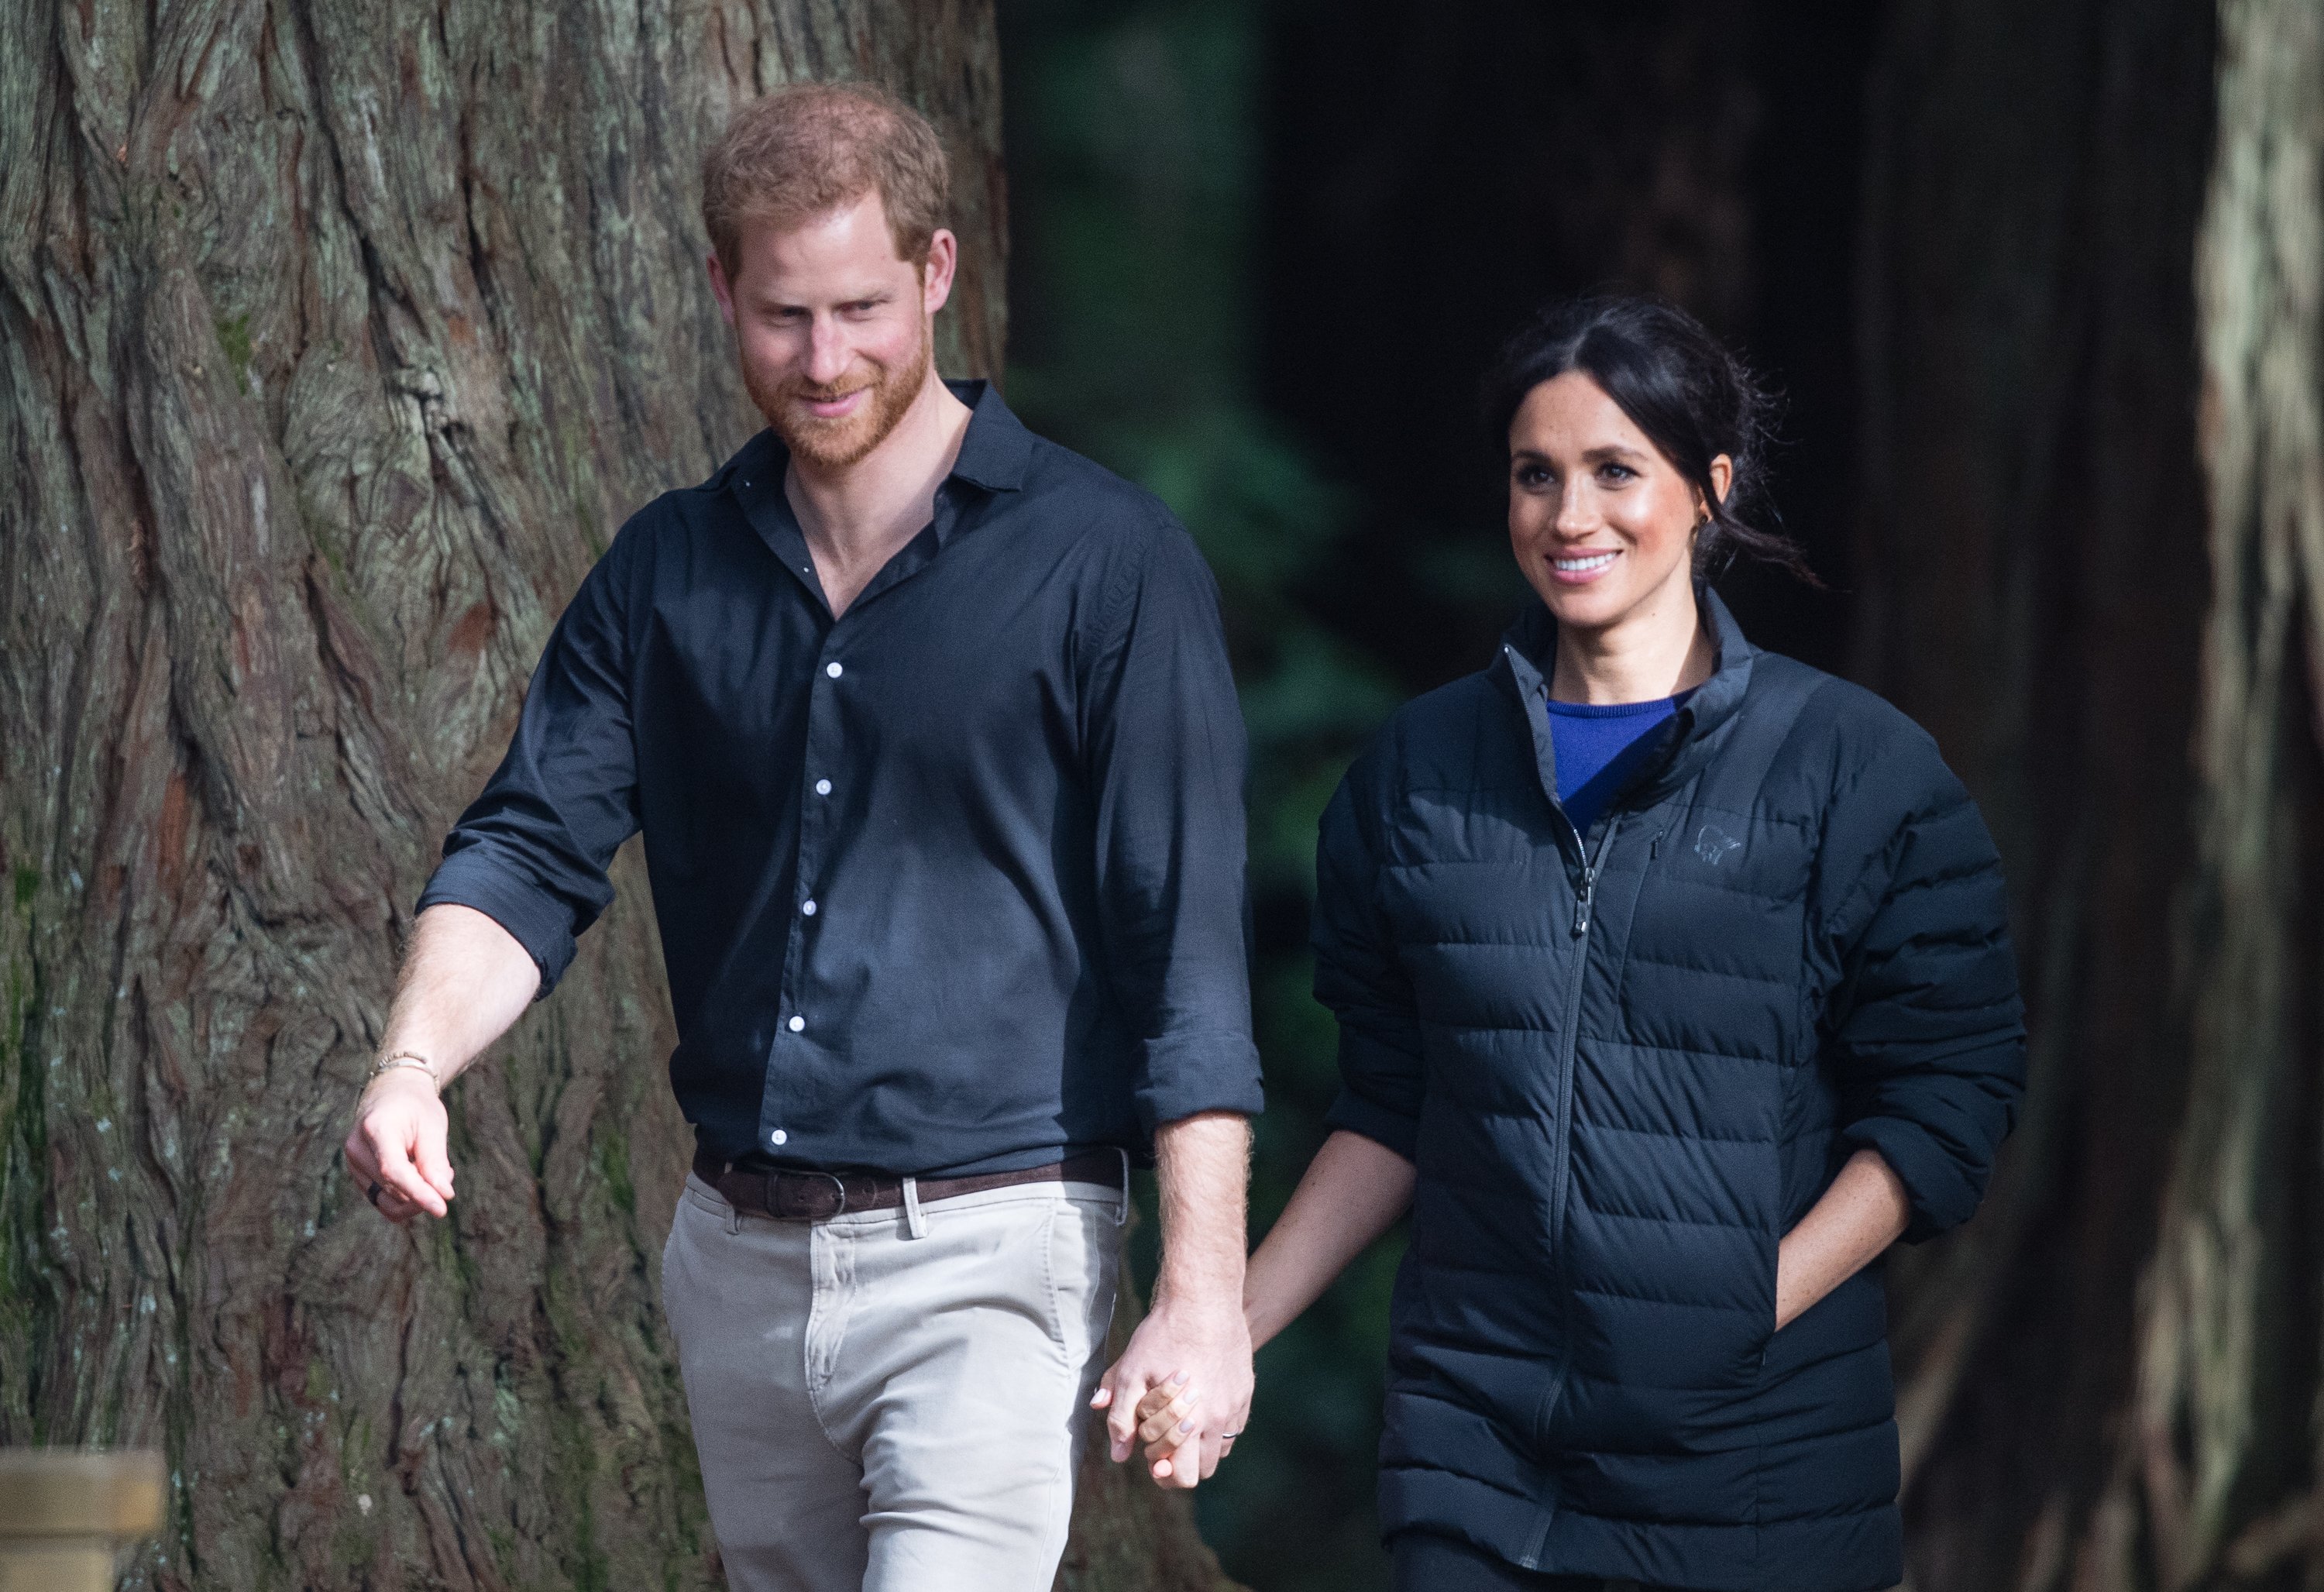 El príncipe Harry, duque de Sussex y Meghan, duquesa de Sussex visitan el paseo de los árboles de Redwoods el 31 de octubre de 2018 en Rotorua, Nueva Zelanda. | Foto: Getty Images